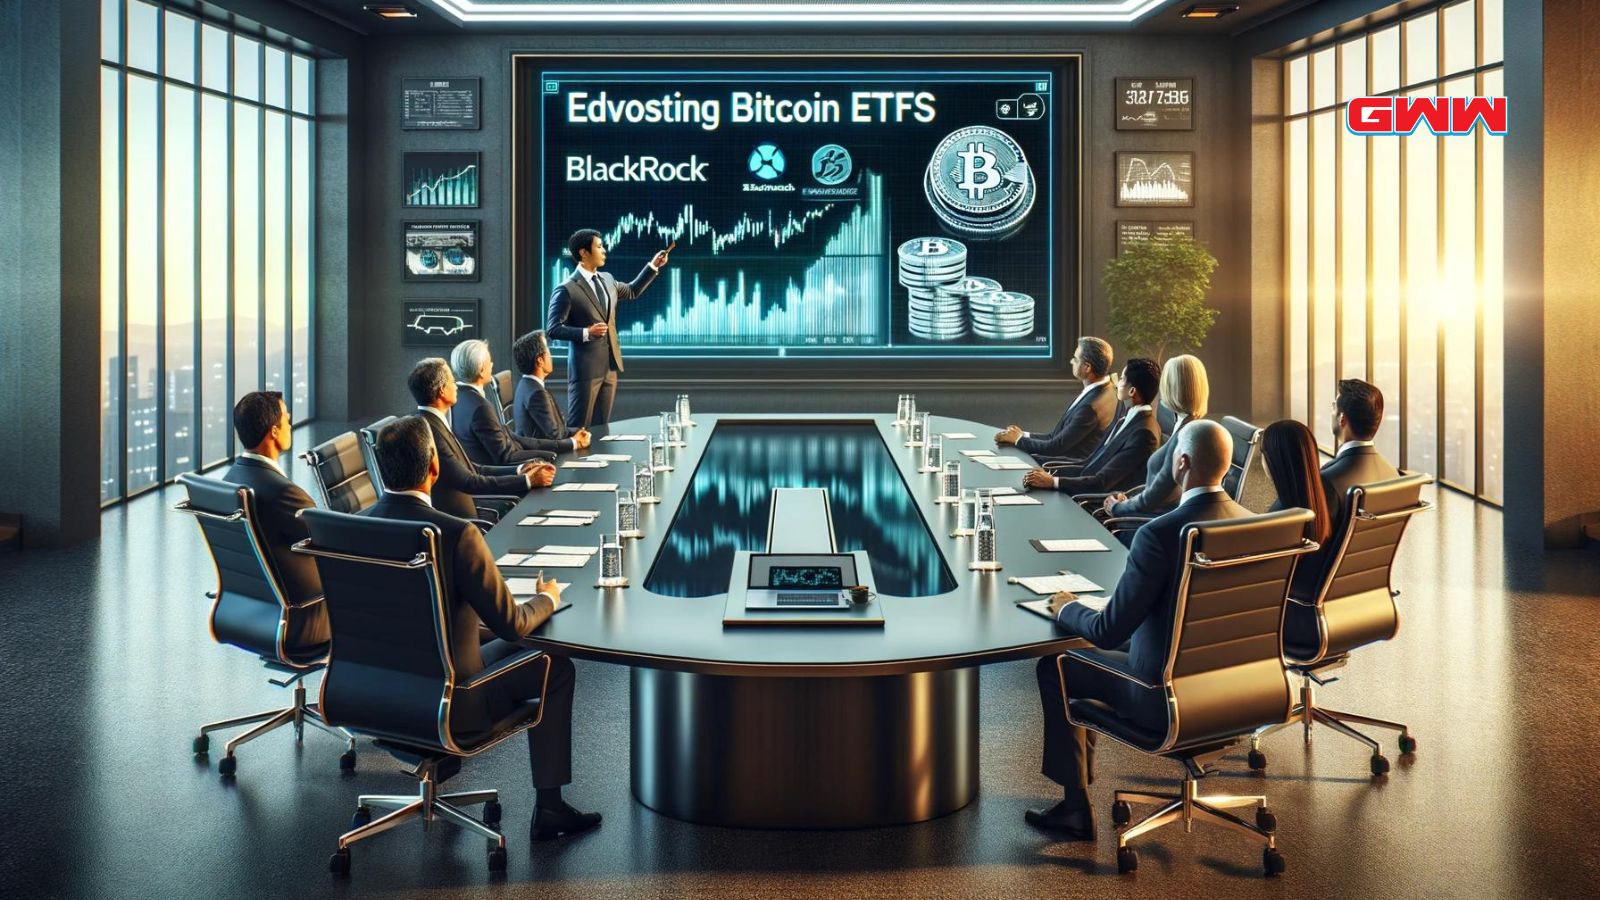 BlackRock executive presents Bitcoin ETFs in boardroom